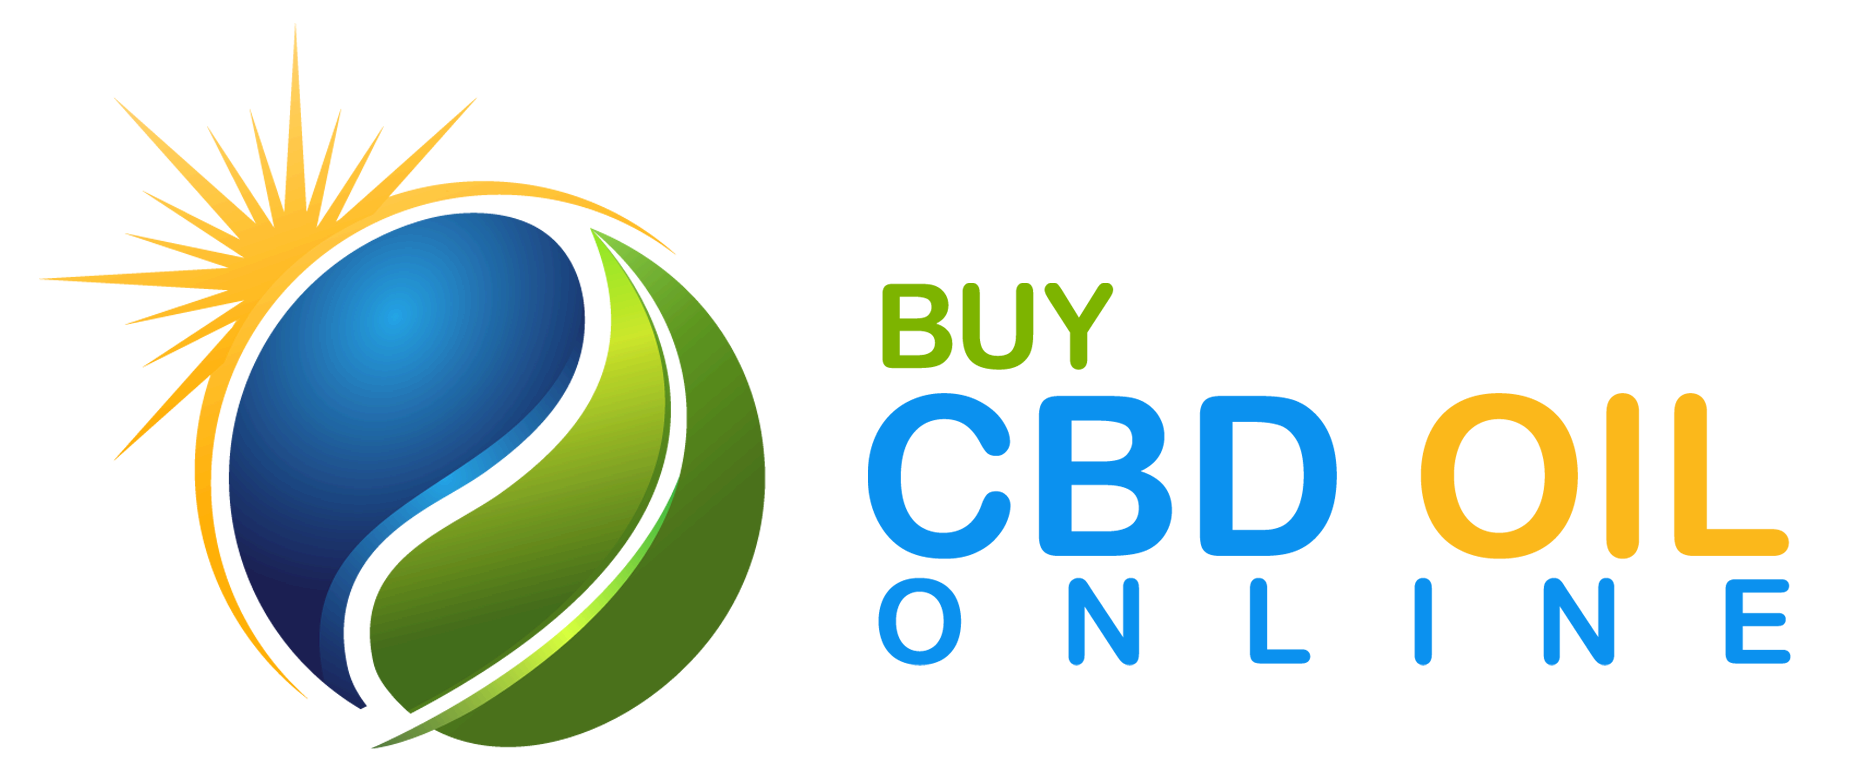 Buy CBD Oil Online Marys Nutritionals Burnout Elite Topical Mist